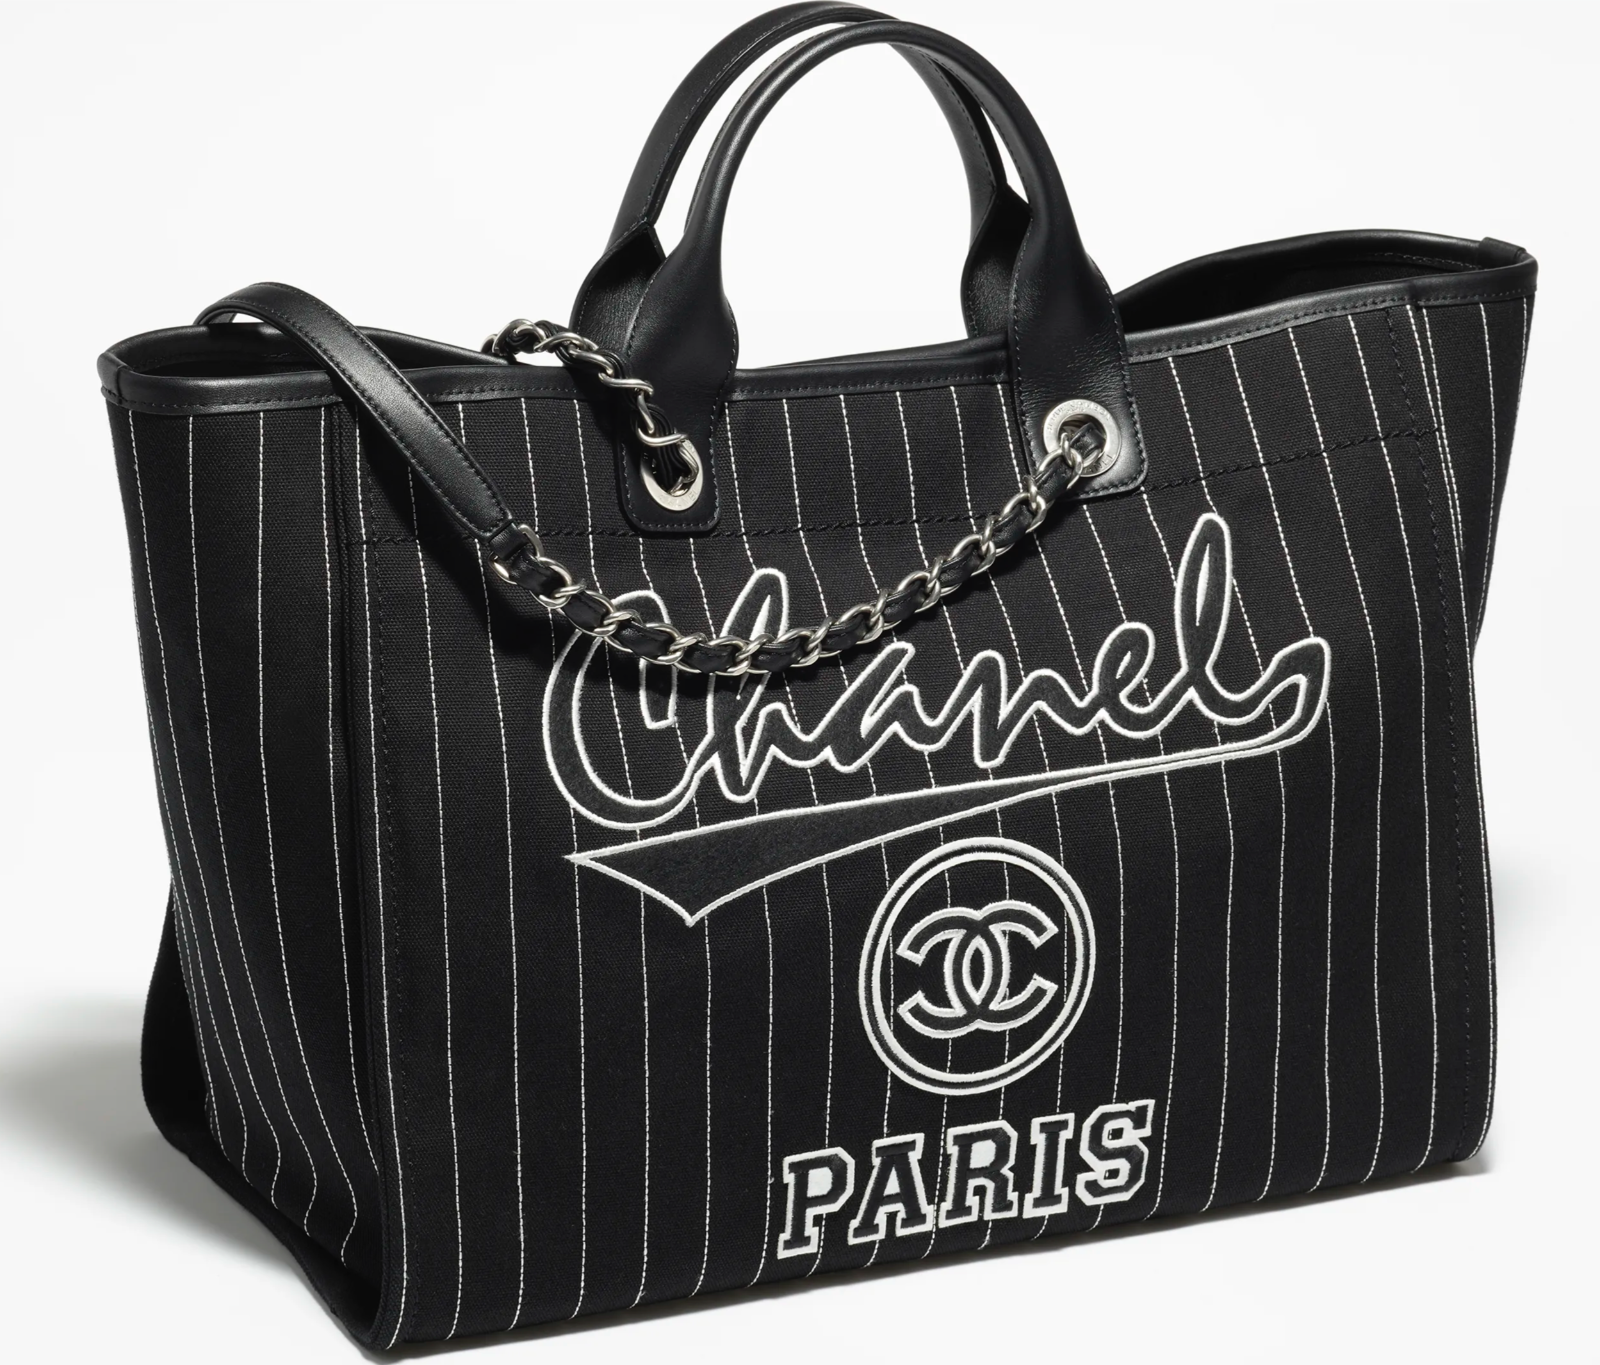 Sell Chanel Chain Hobo Bag - Black